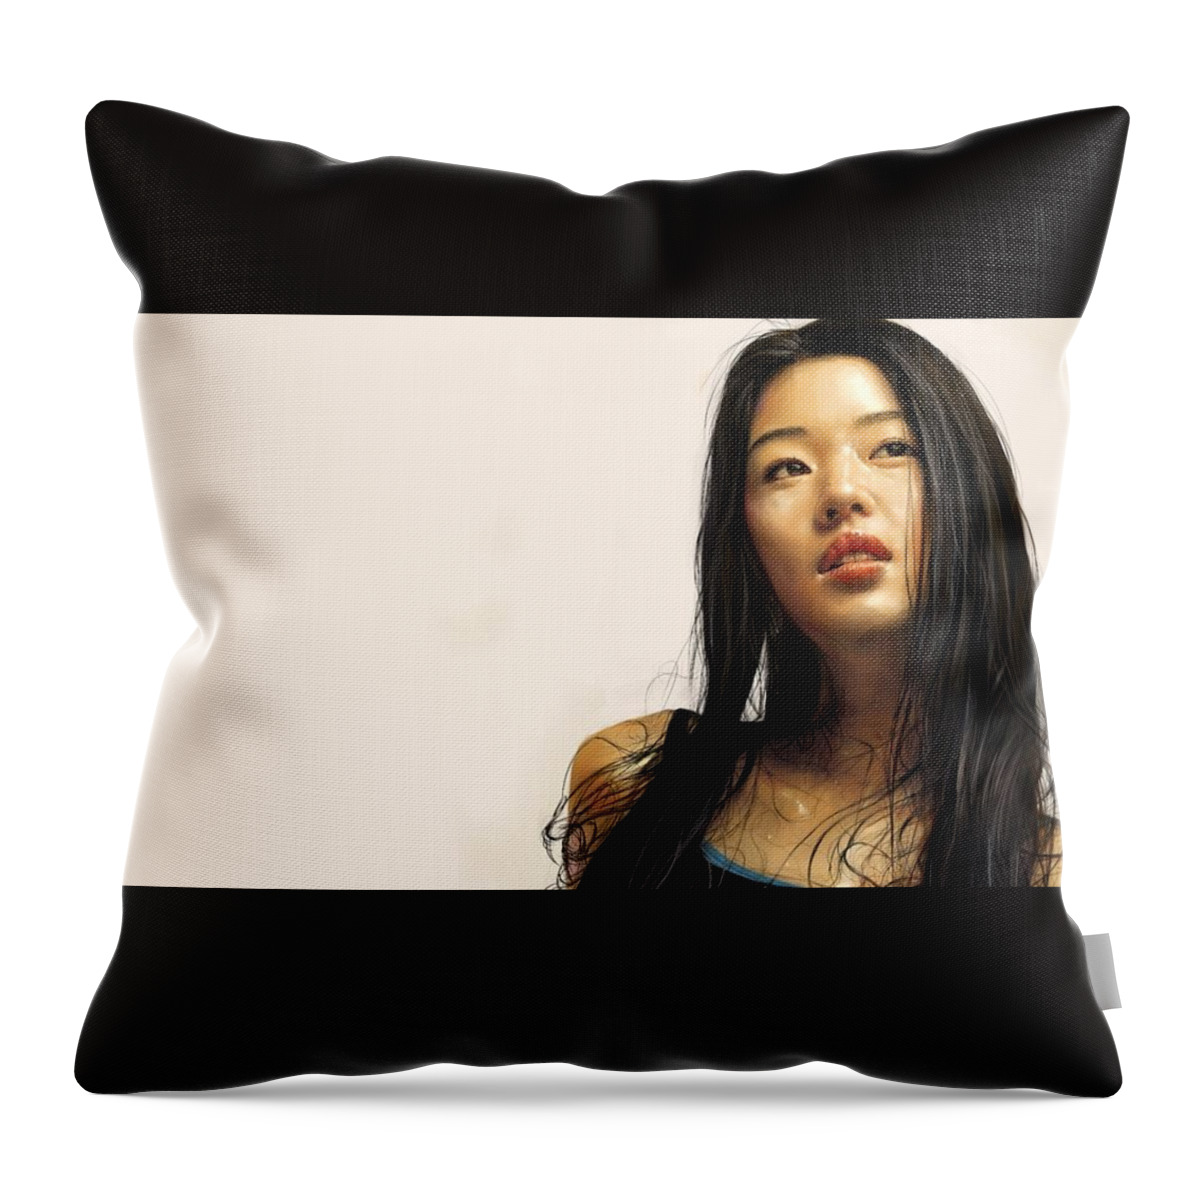 Women Throw Pillow featuring the digital art Women #177 by Super Lovely